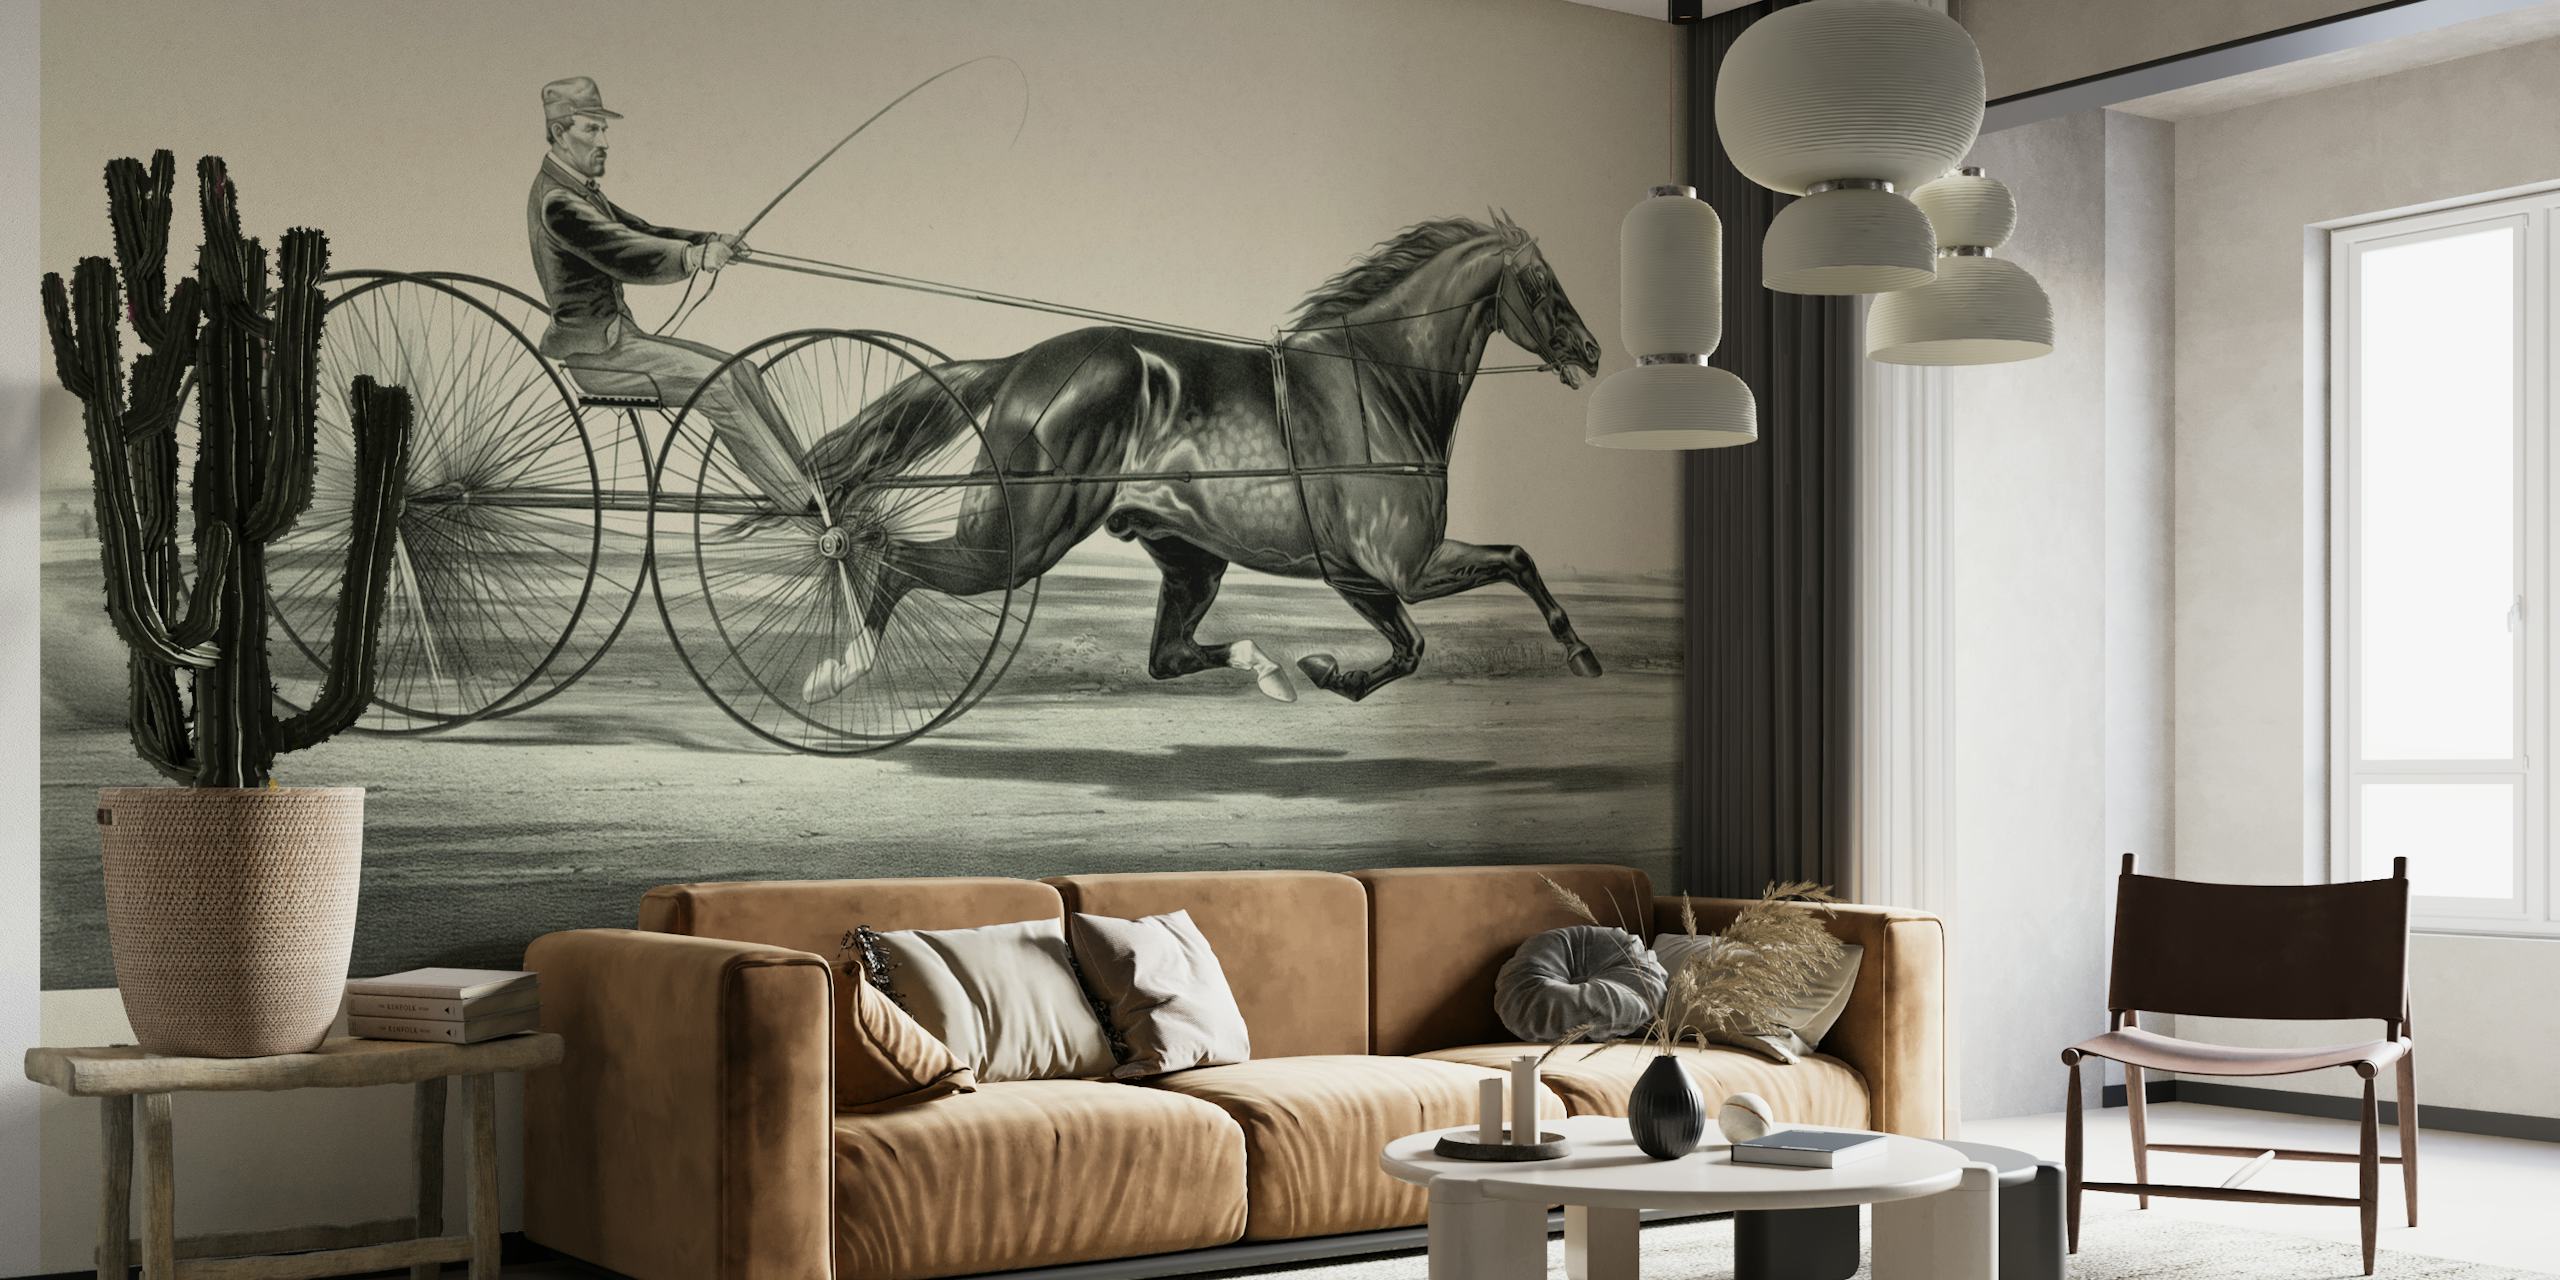 Jednobojna povijesna zidna slika o konjskim utrkama koja prikazuje džokeja u zaprežnim kolima